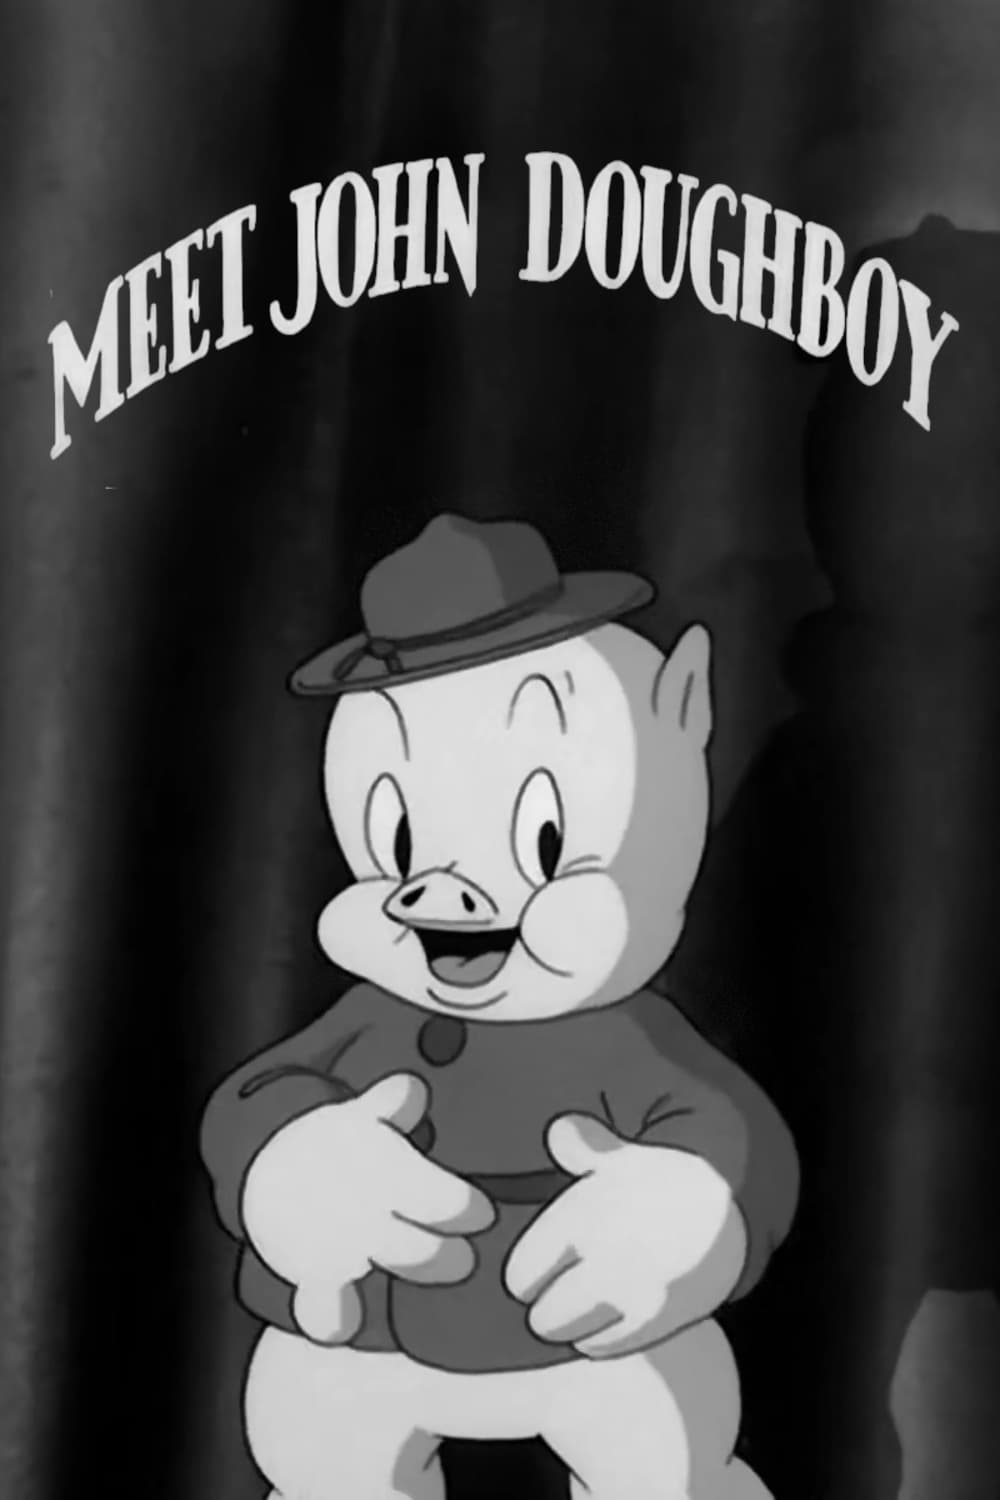 Meet John Doughboy